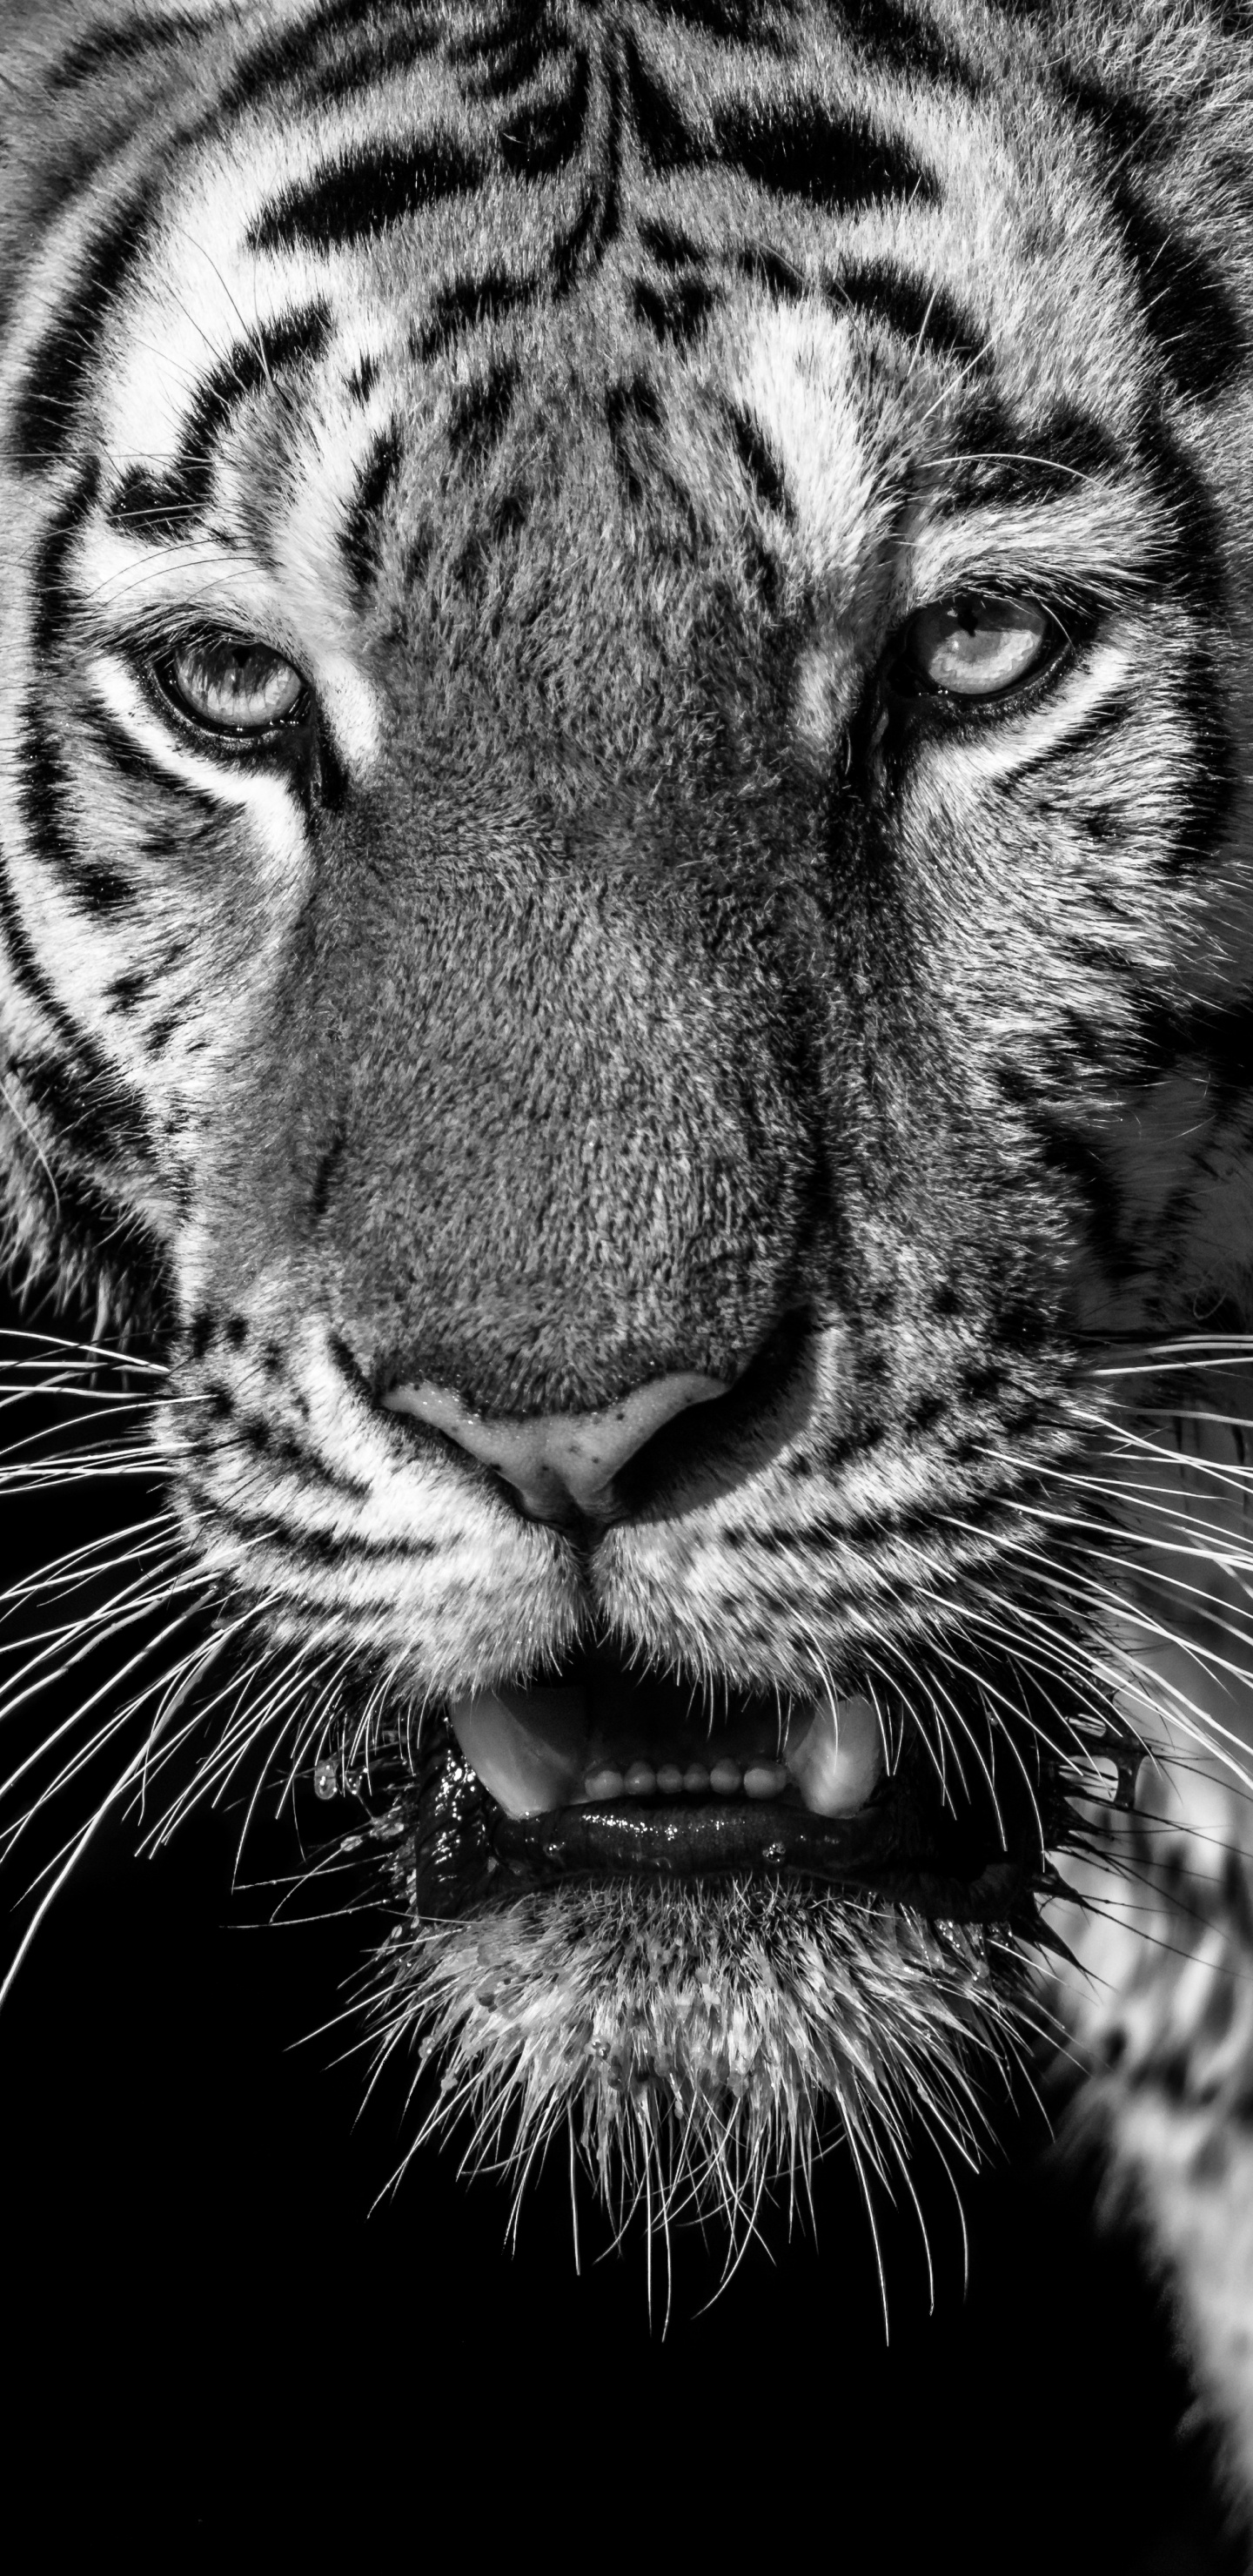 老虎, 白虎, 孟加拉虎, 野生动物, 胡须 壁纸 1440x2960 允许